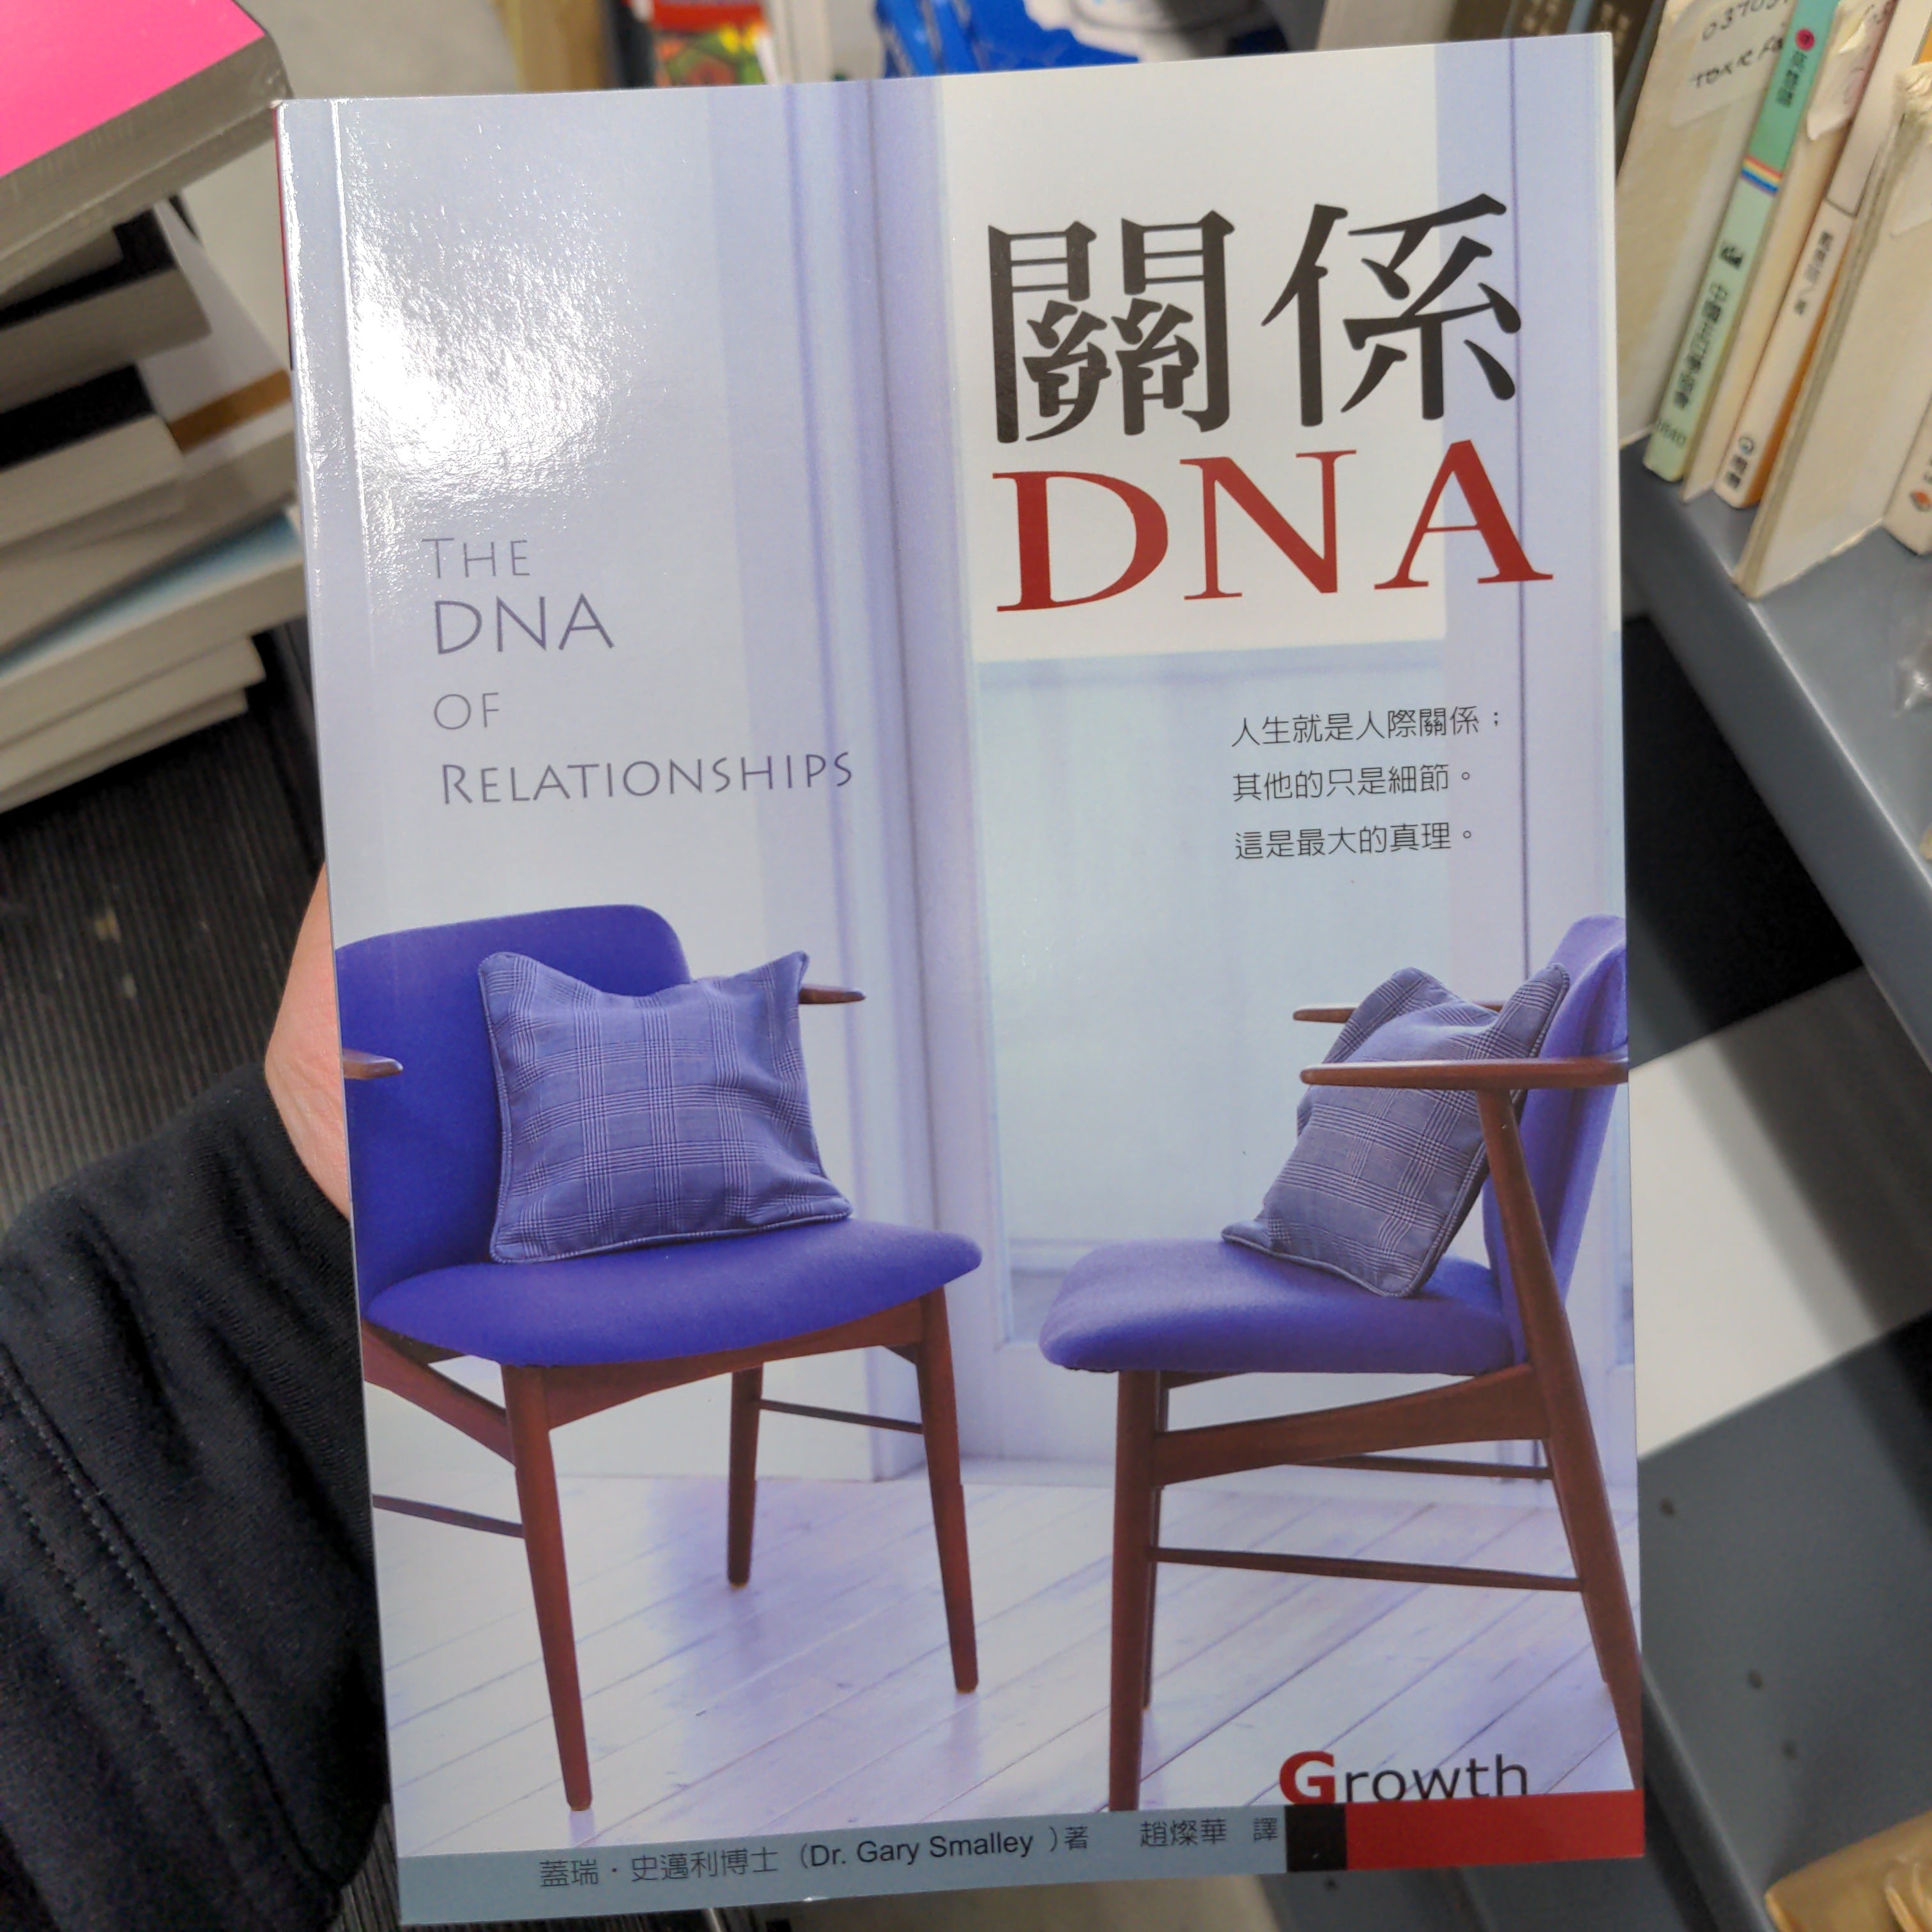 關係DNA -- The DNA of Relationships